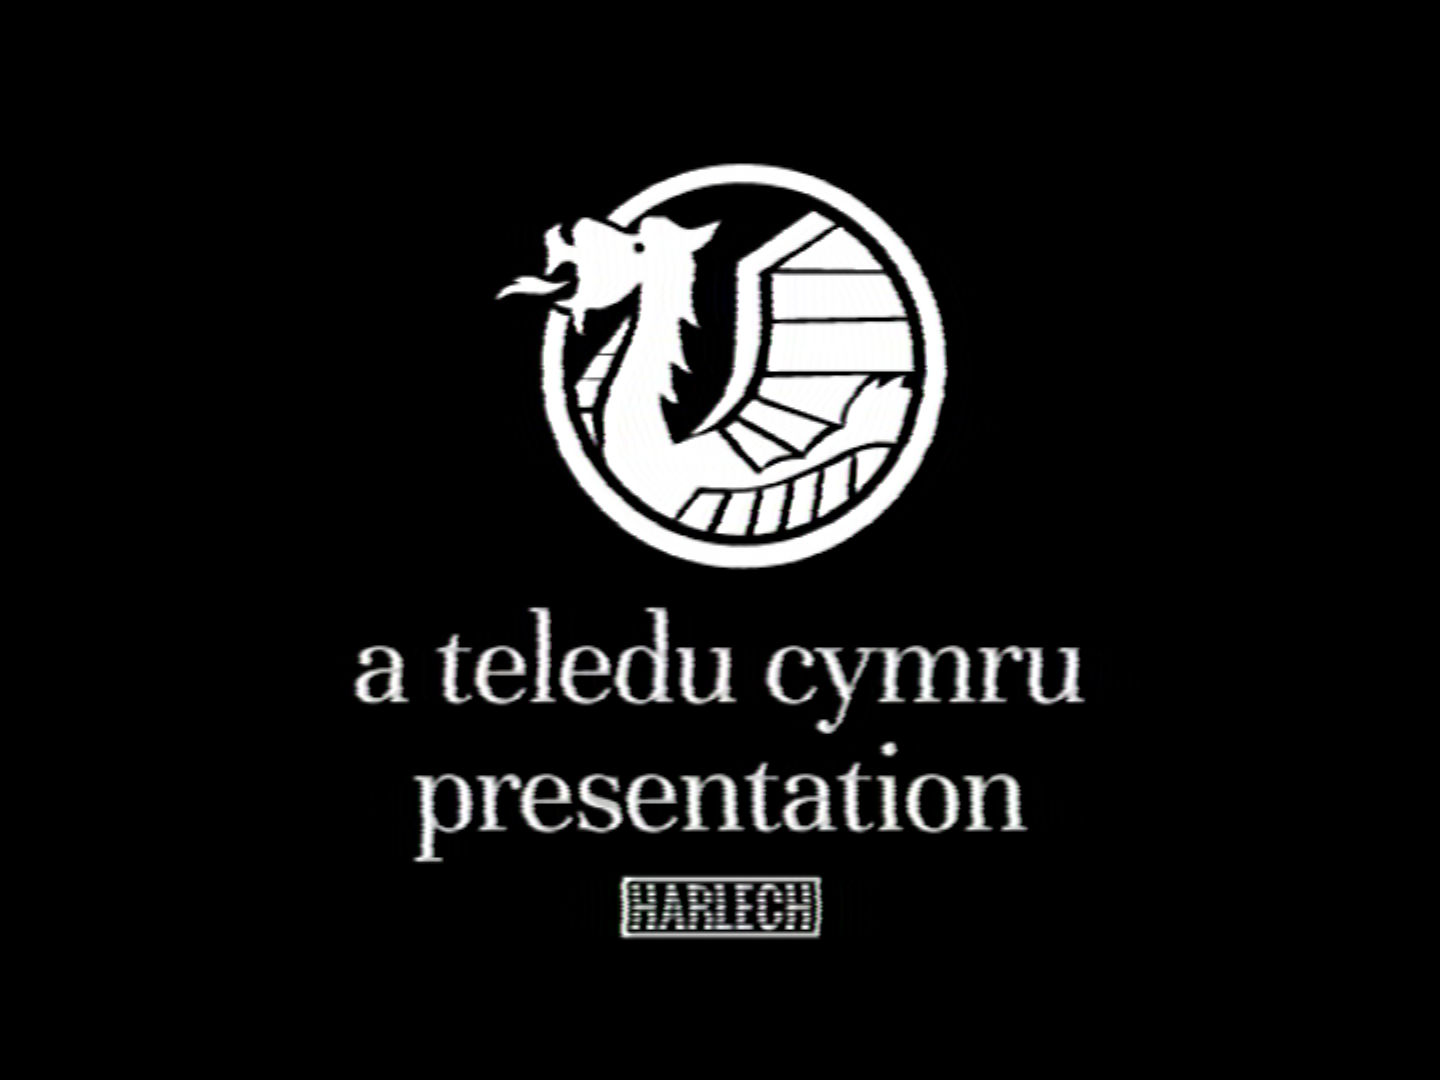 Teledu Cymru endcap (1968)